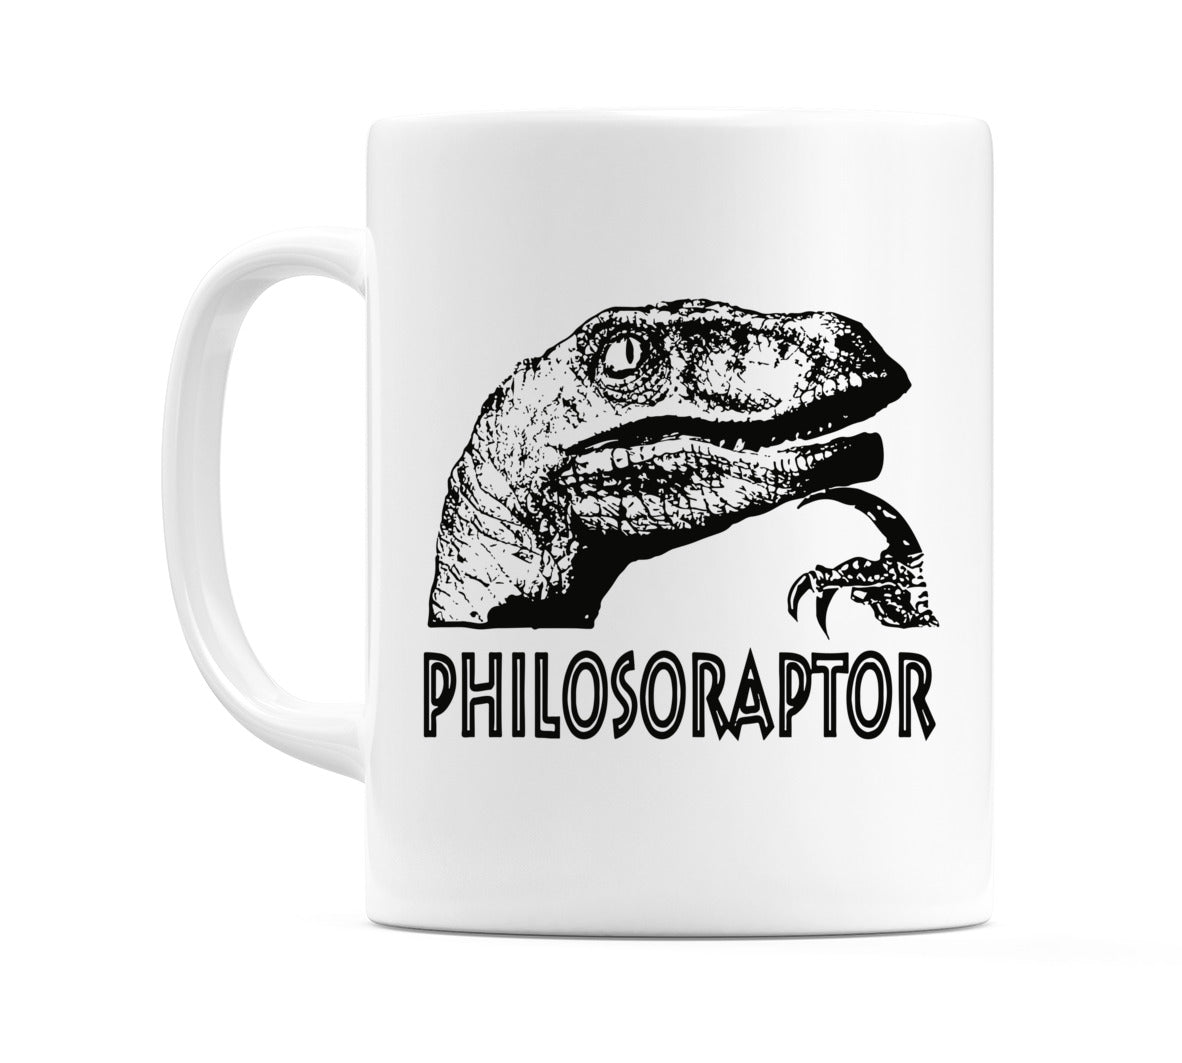 Philosoraptor Mug